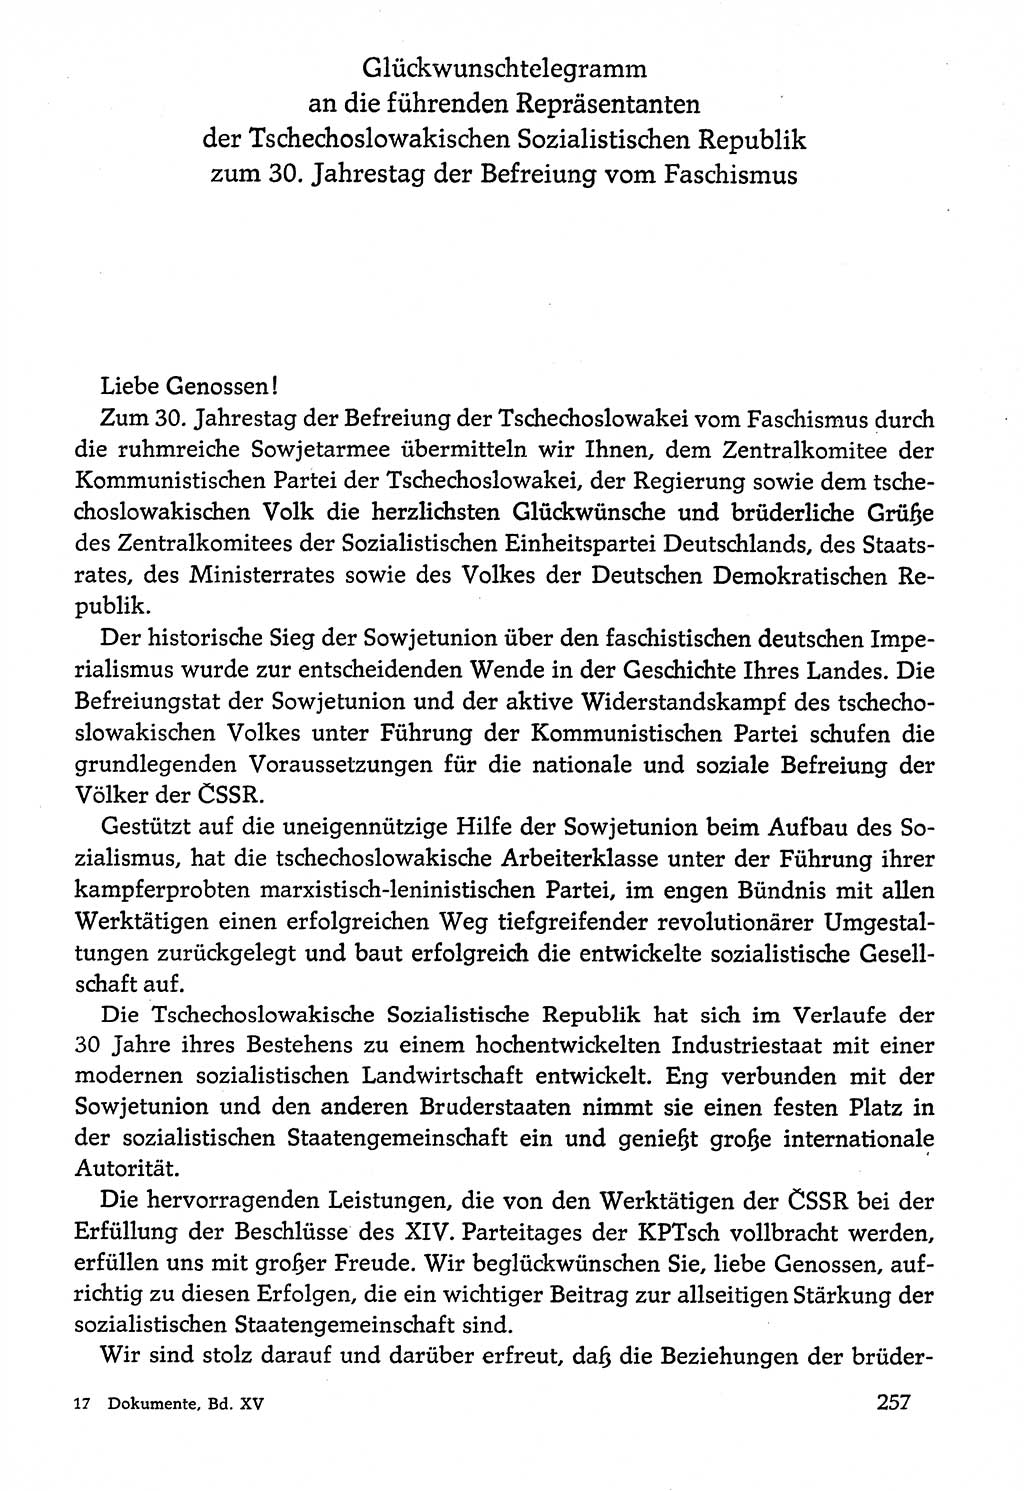 Dokumente der Sozialistischen Einheitspartei Deutschlands (SED) [Deutsche Demokratische Republik (DDR)] 1974-1975, Seite 257 (Dok. SED DDR 1978, Bd. ⅩⅤ, S. 257)